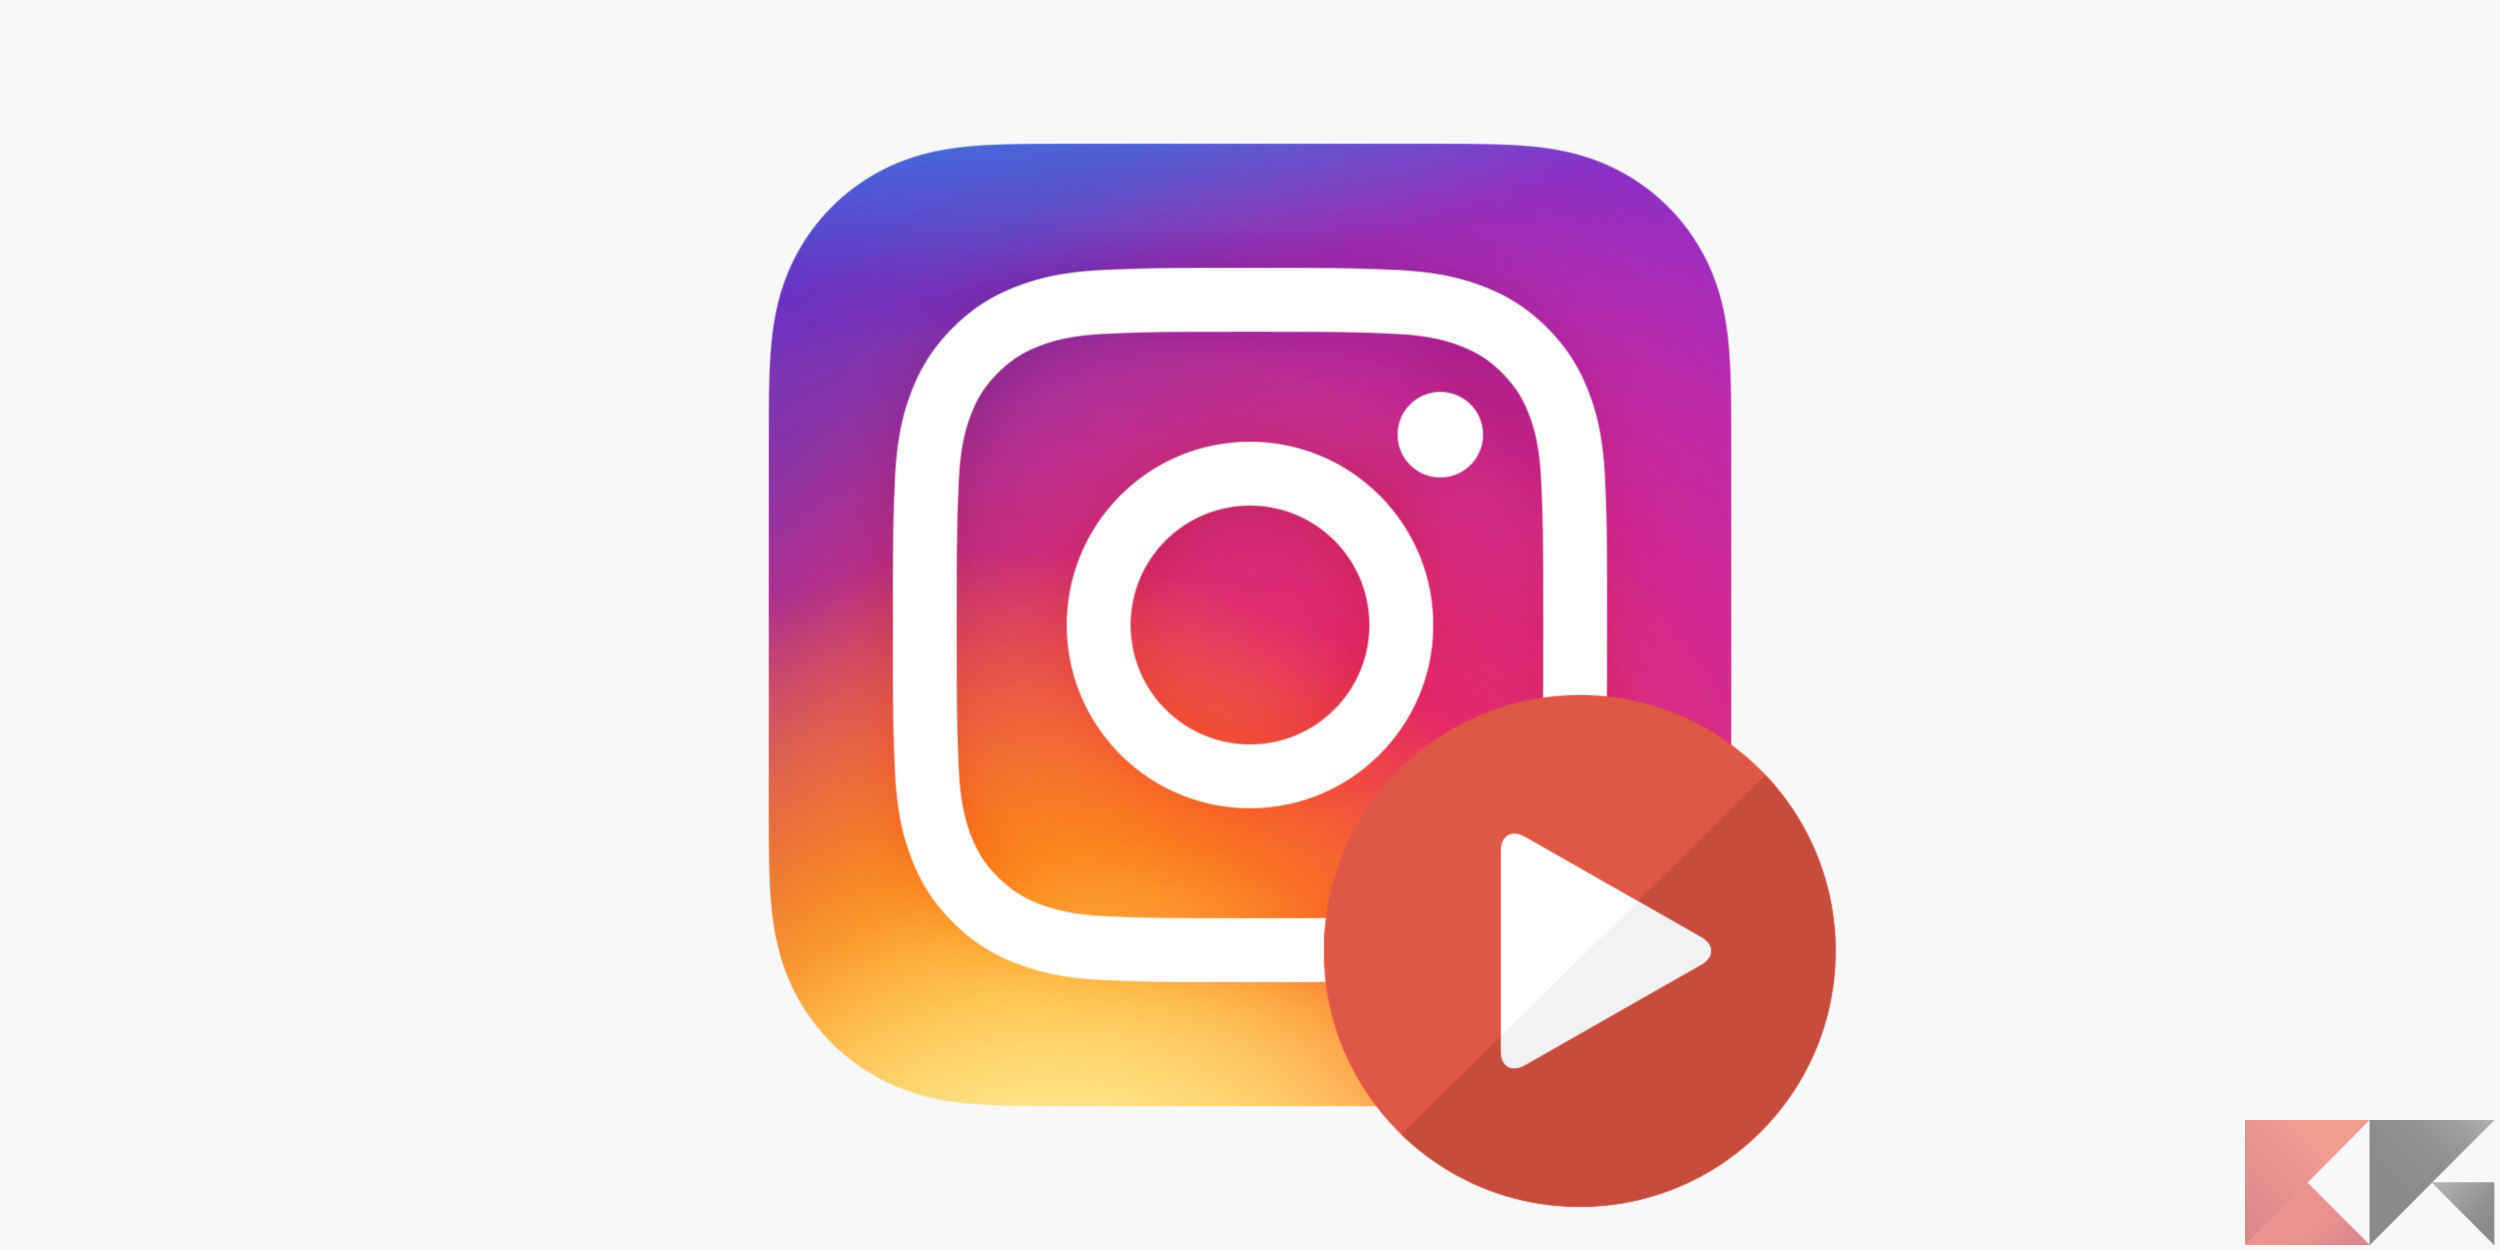 Instagram video